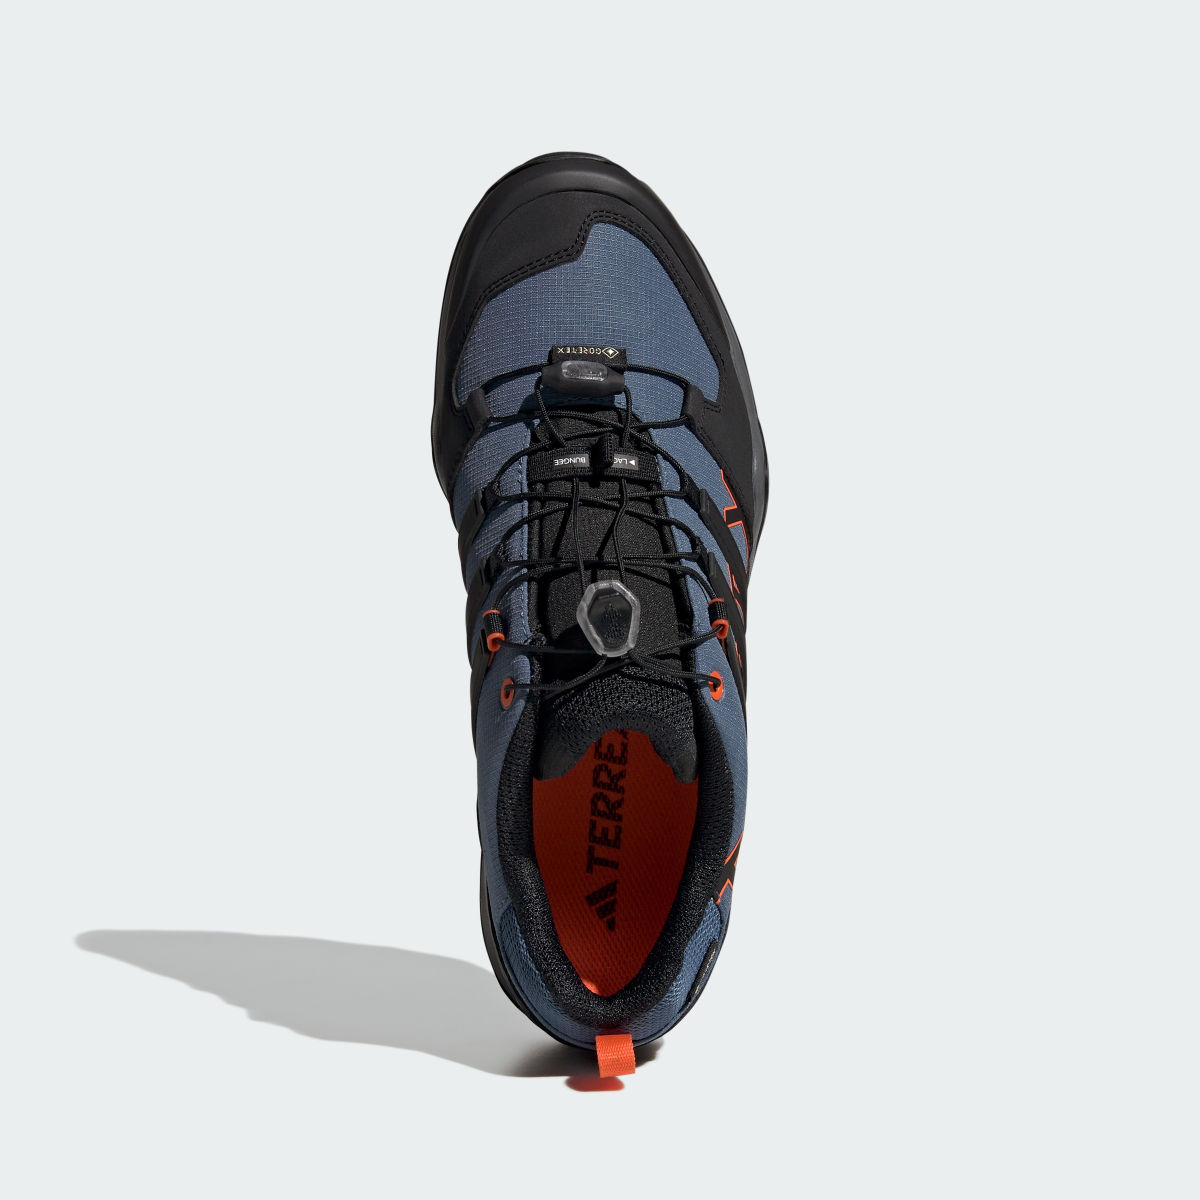 Adidas Terrex Swift R2 GORE-TEX Yürüyüş Ayakkabısı. 4